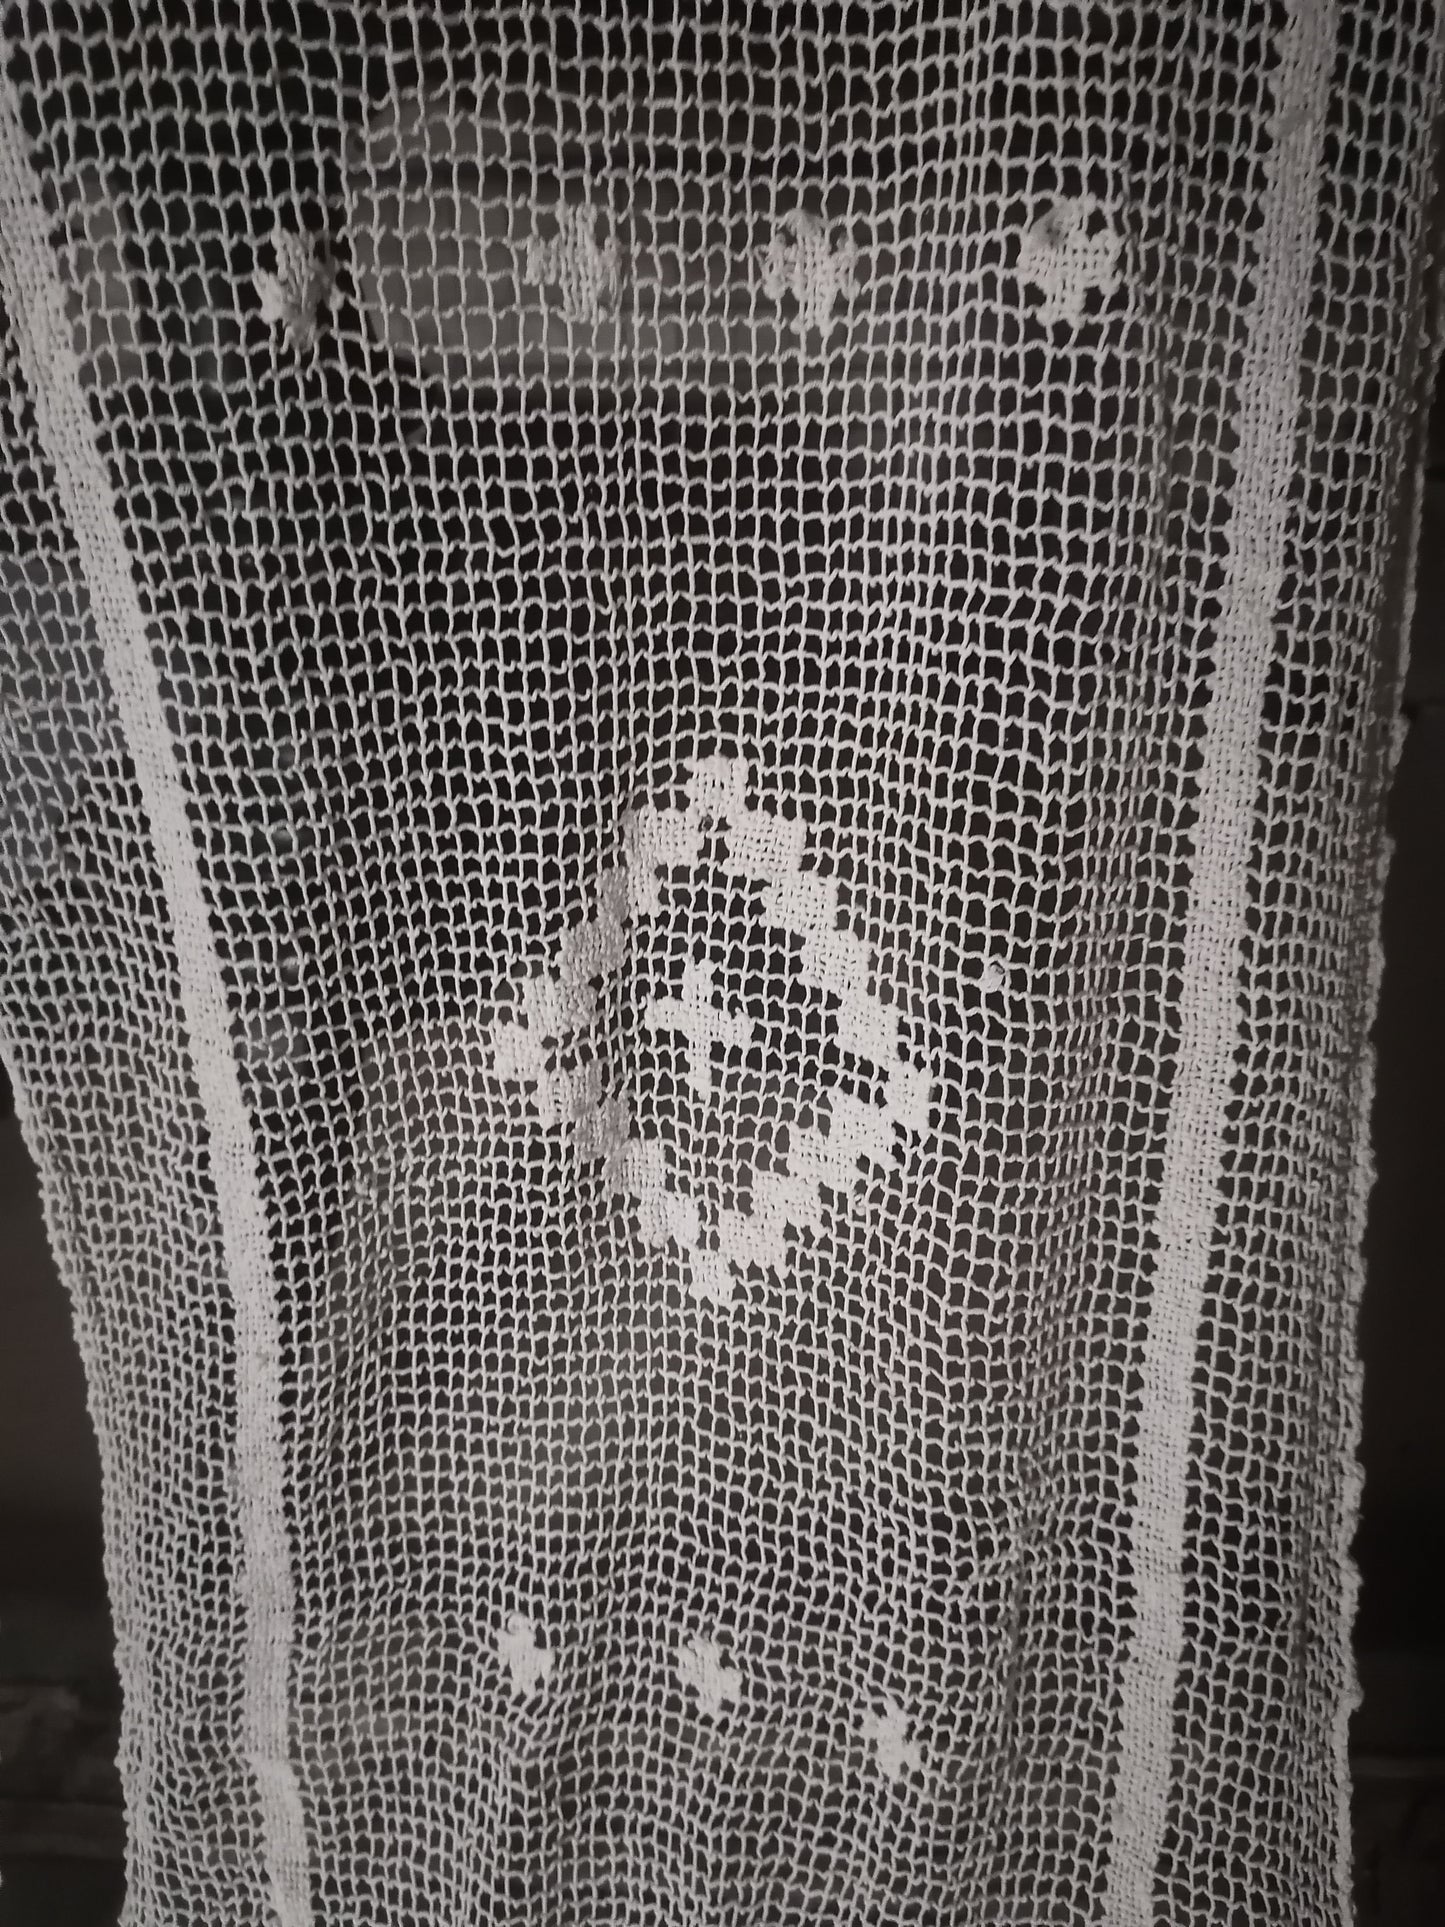 Antique French filet lace Curtains cream cotton 160cm L/90cm W